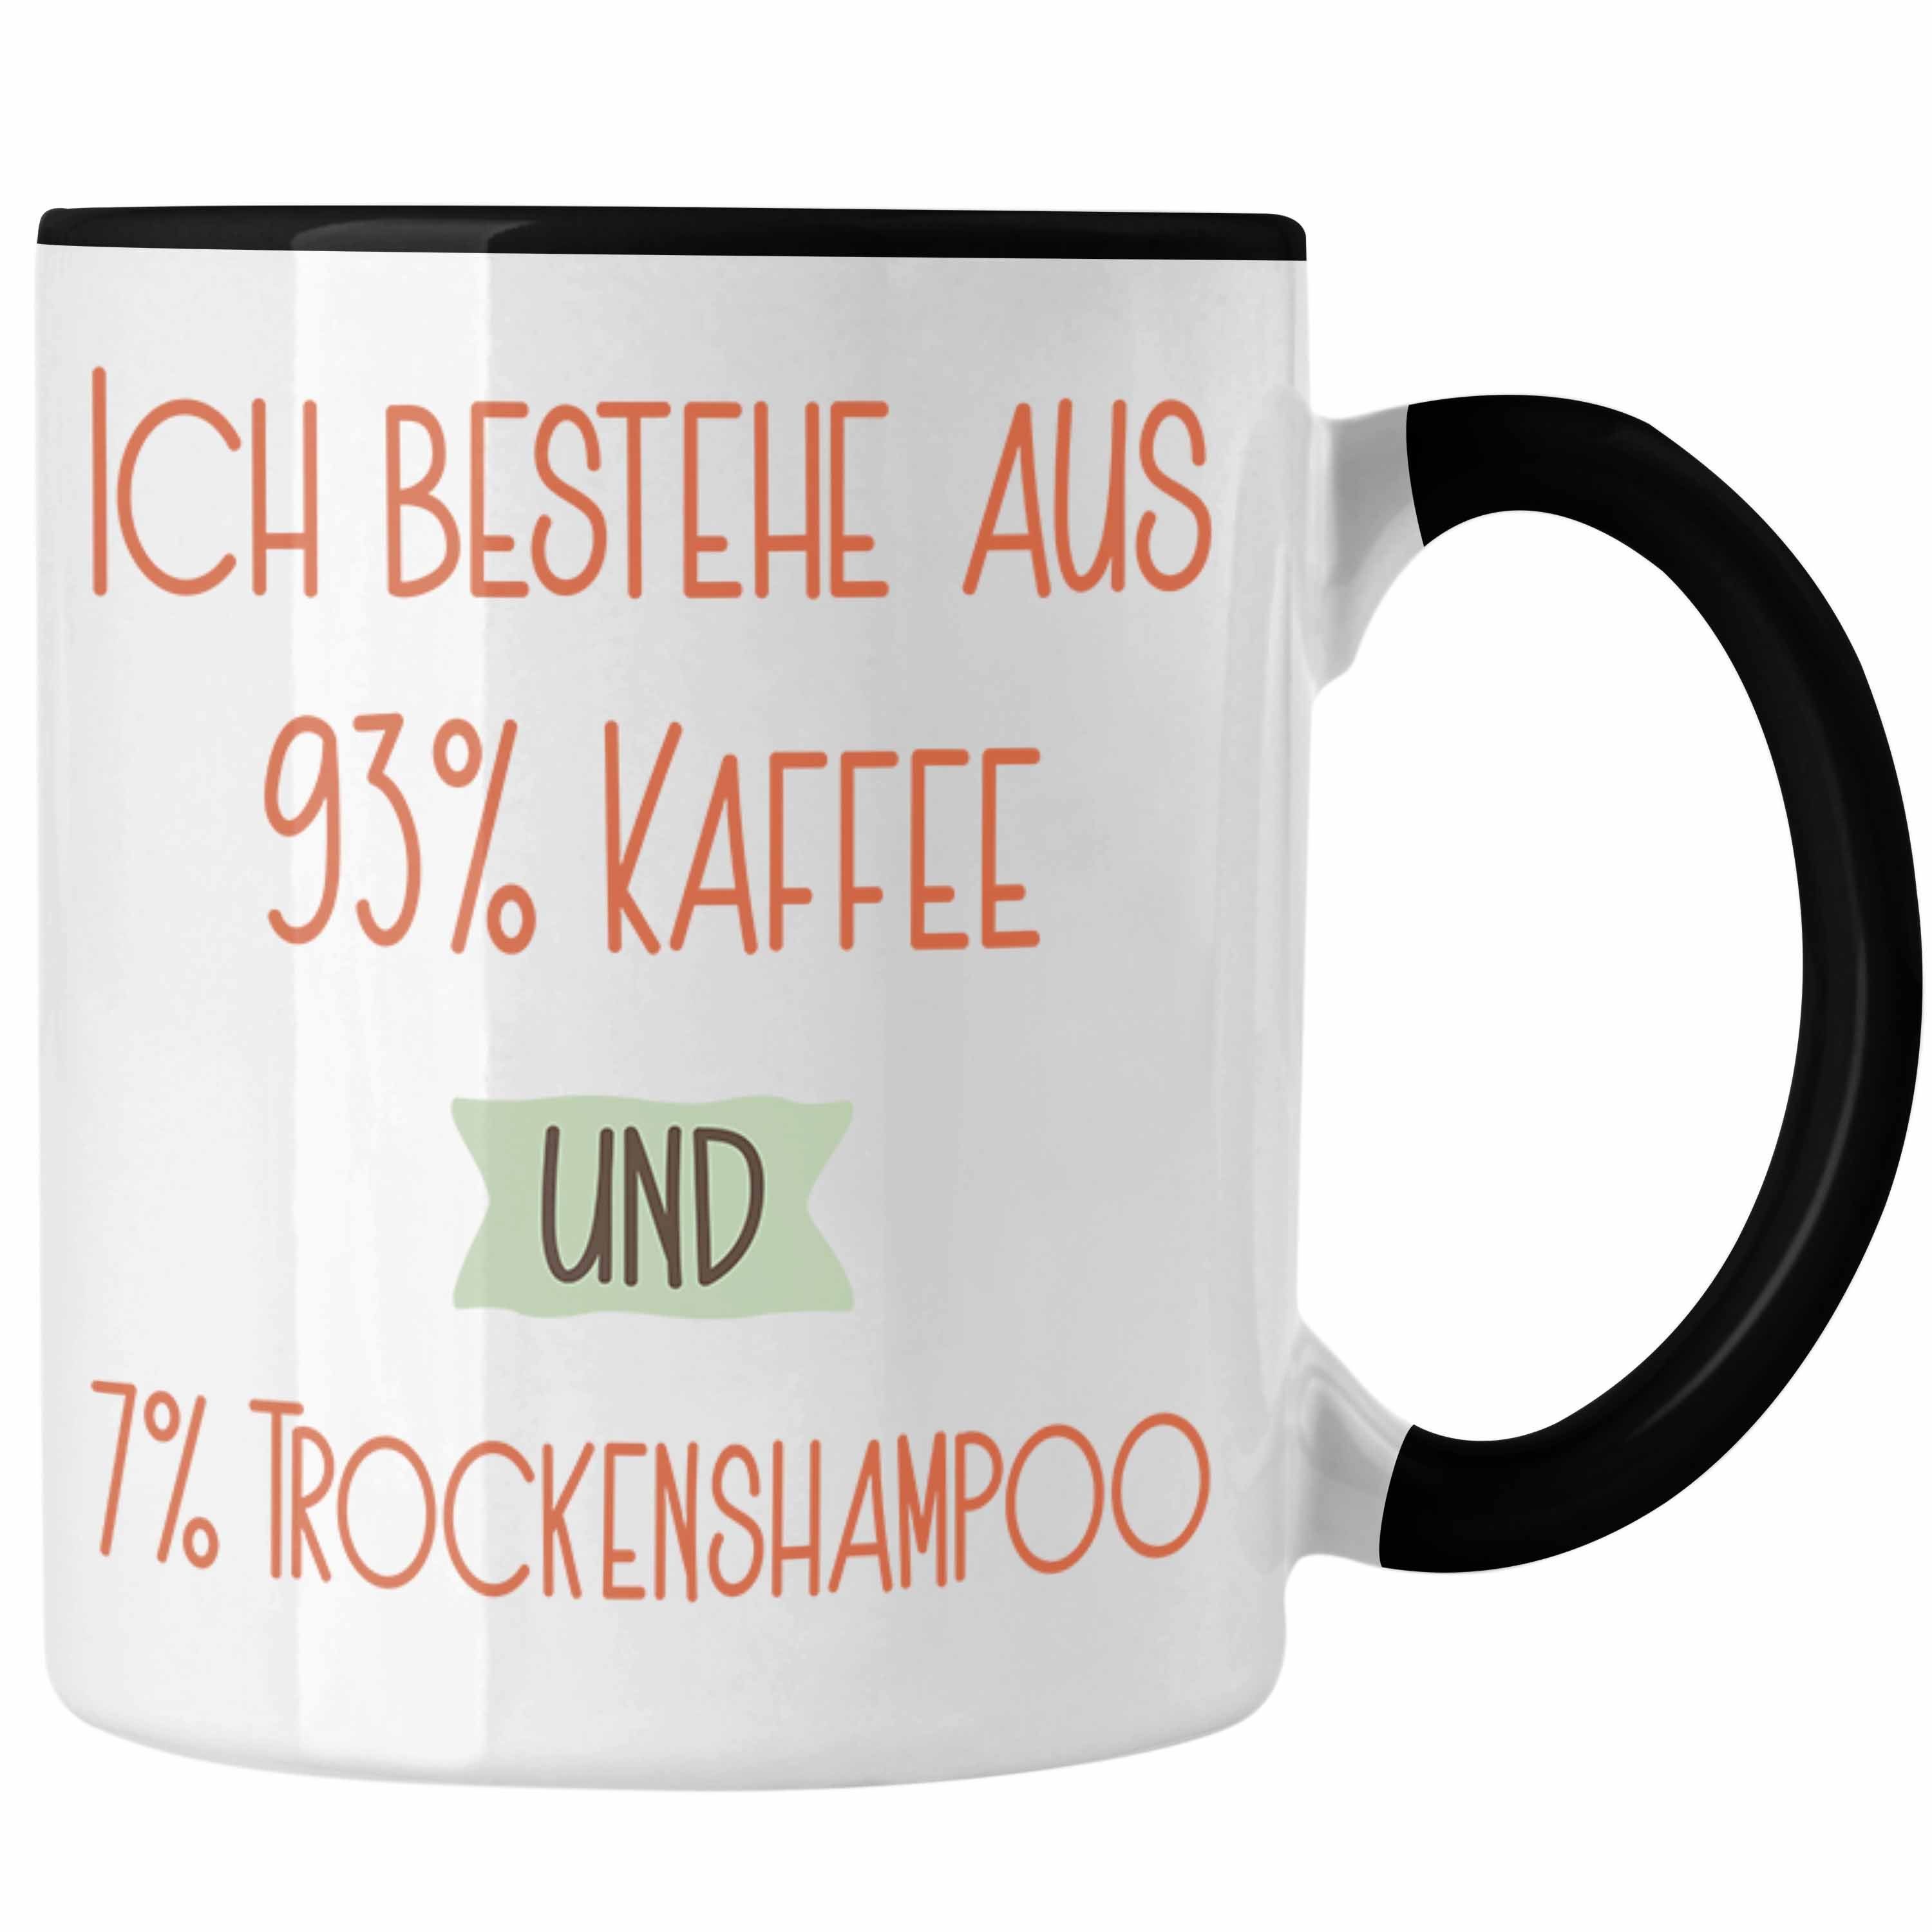 und Spruch Lustiger Schwarz Geschenk Für Kaffee Ko Tasse 93% 7% Tasse Trendation Trockenshampoo